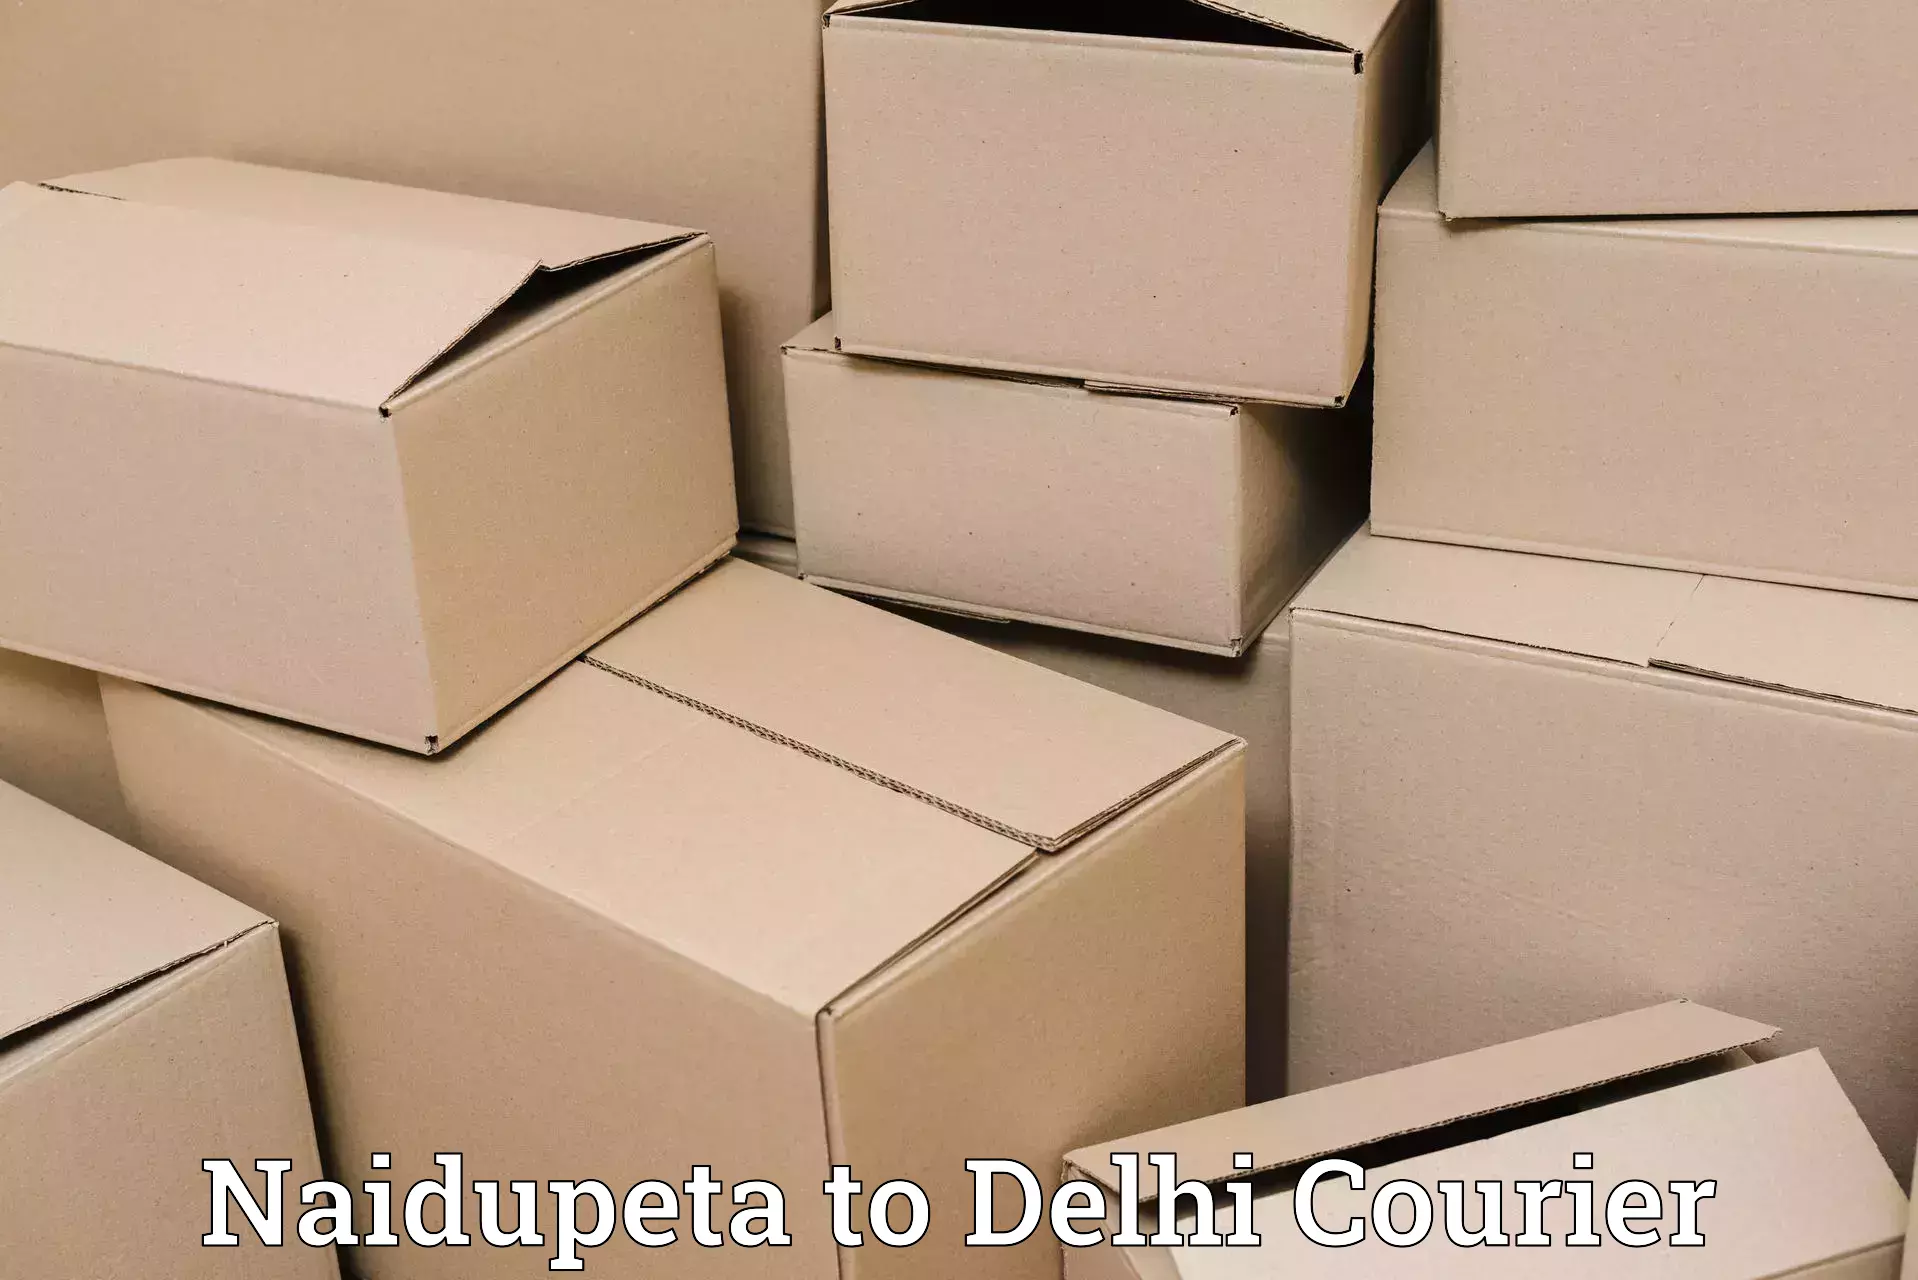 State-of-the-art courier technology Naidupeta to Jamia Millia Islamia New Delhi